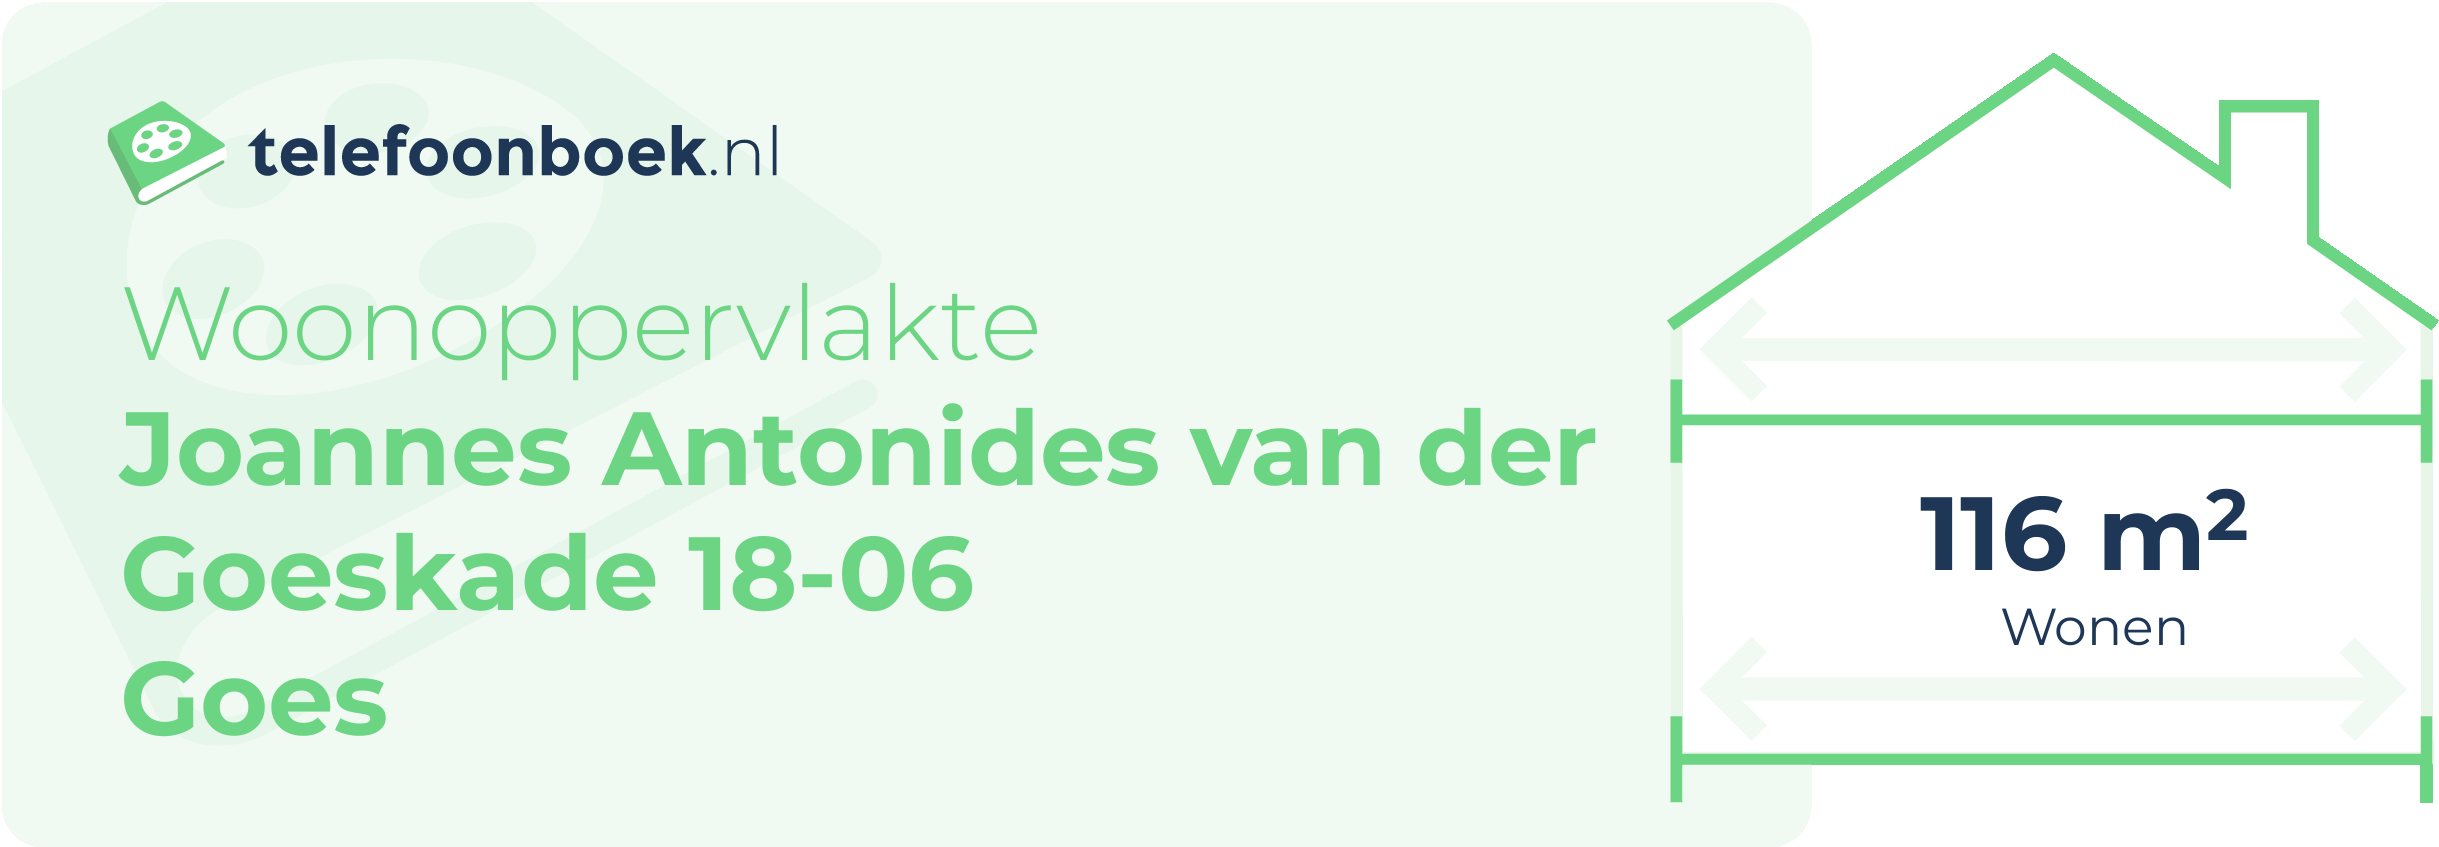 Woonoppervlakte Joannes Antonides Van Der Goeskade 18-06 Goes